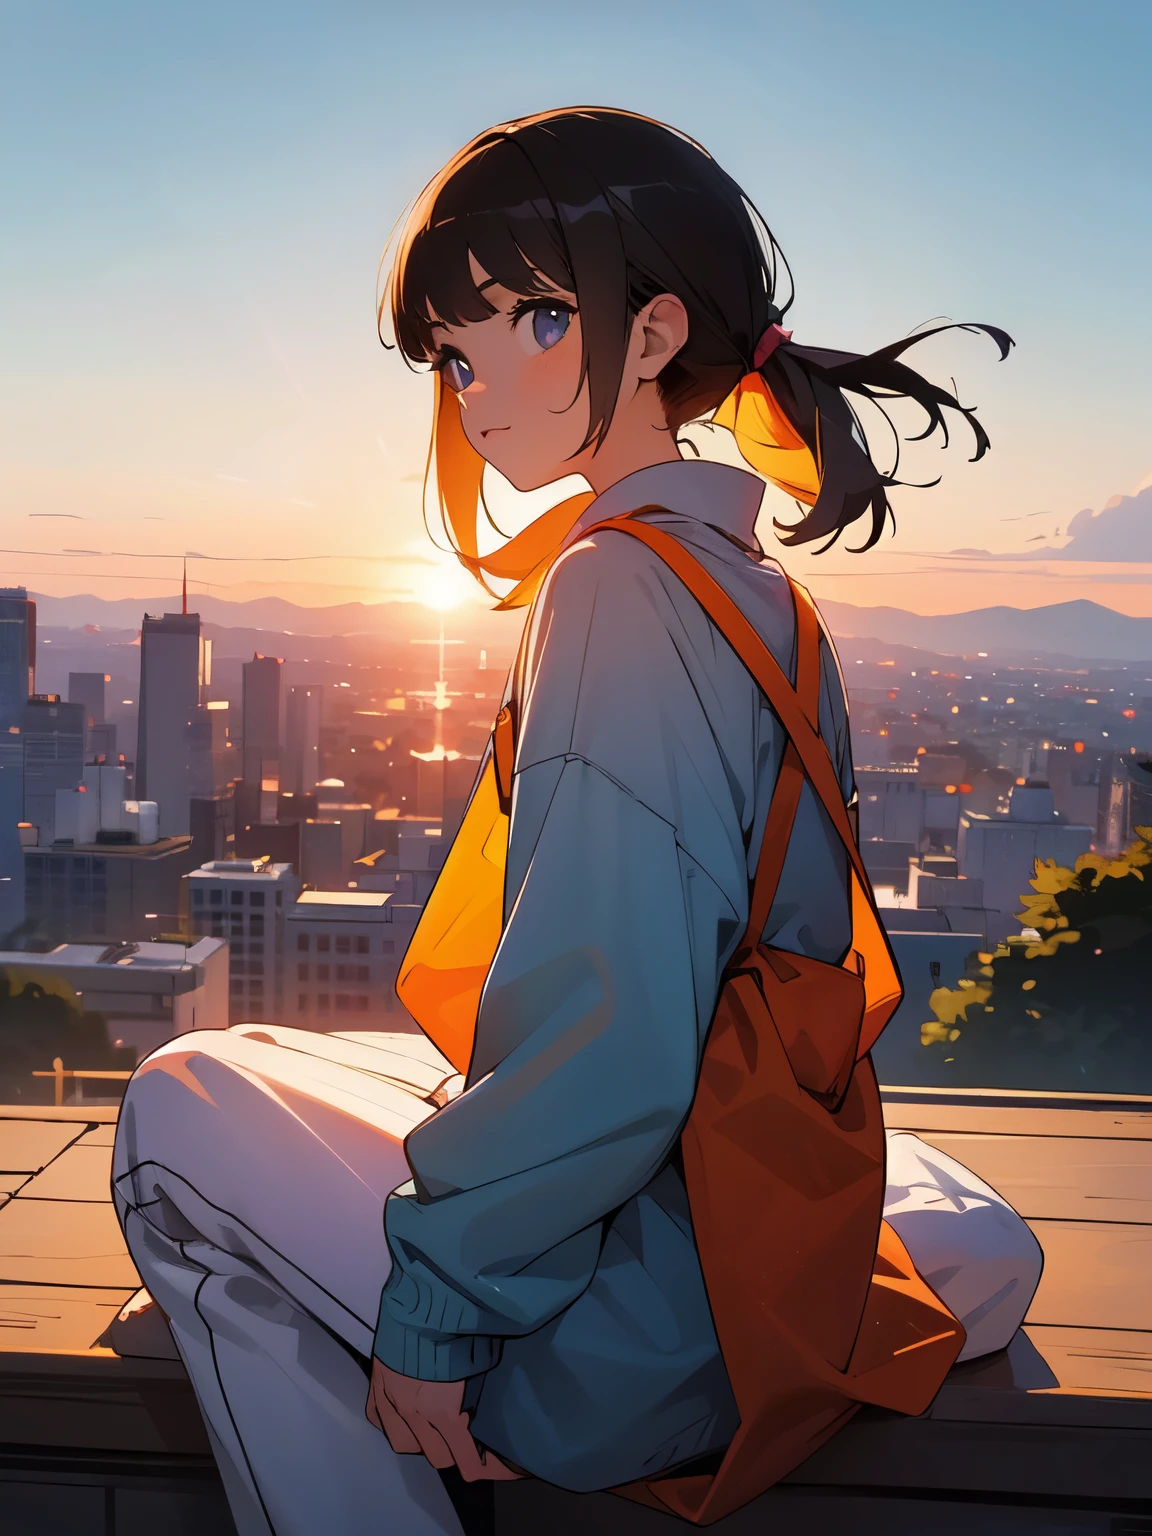 Oh, doce doce anc fofo fofo fofo !!! Uma menina sentada em uma colina observa o pôr do sol sobre a cidade.